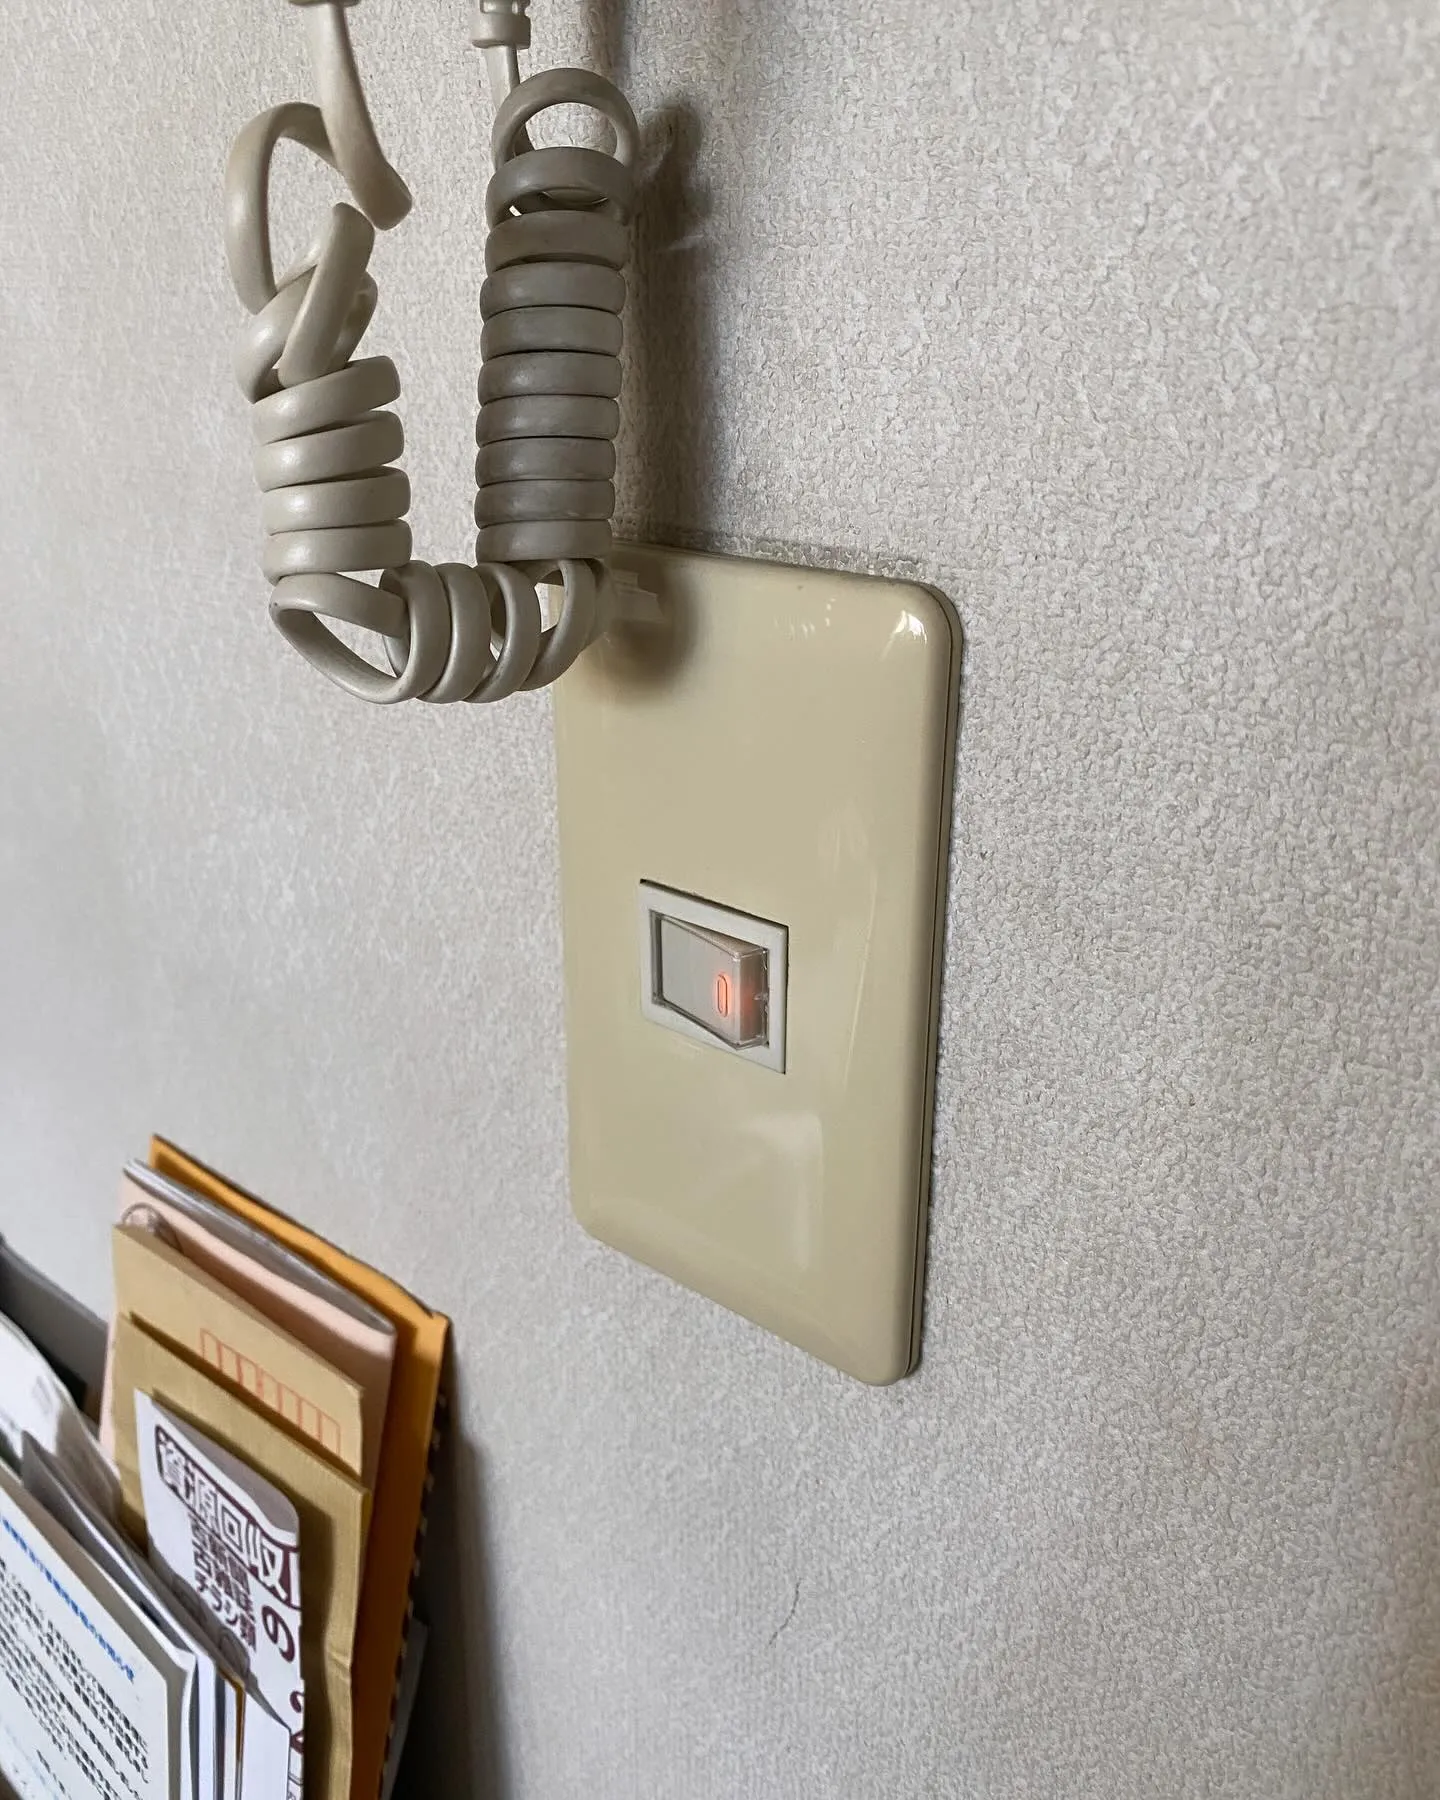 青森市で壁スイッチの交換をしました。